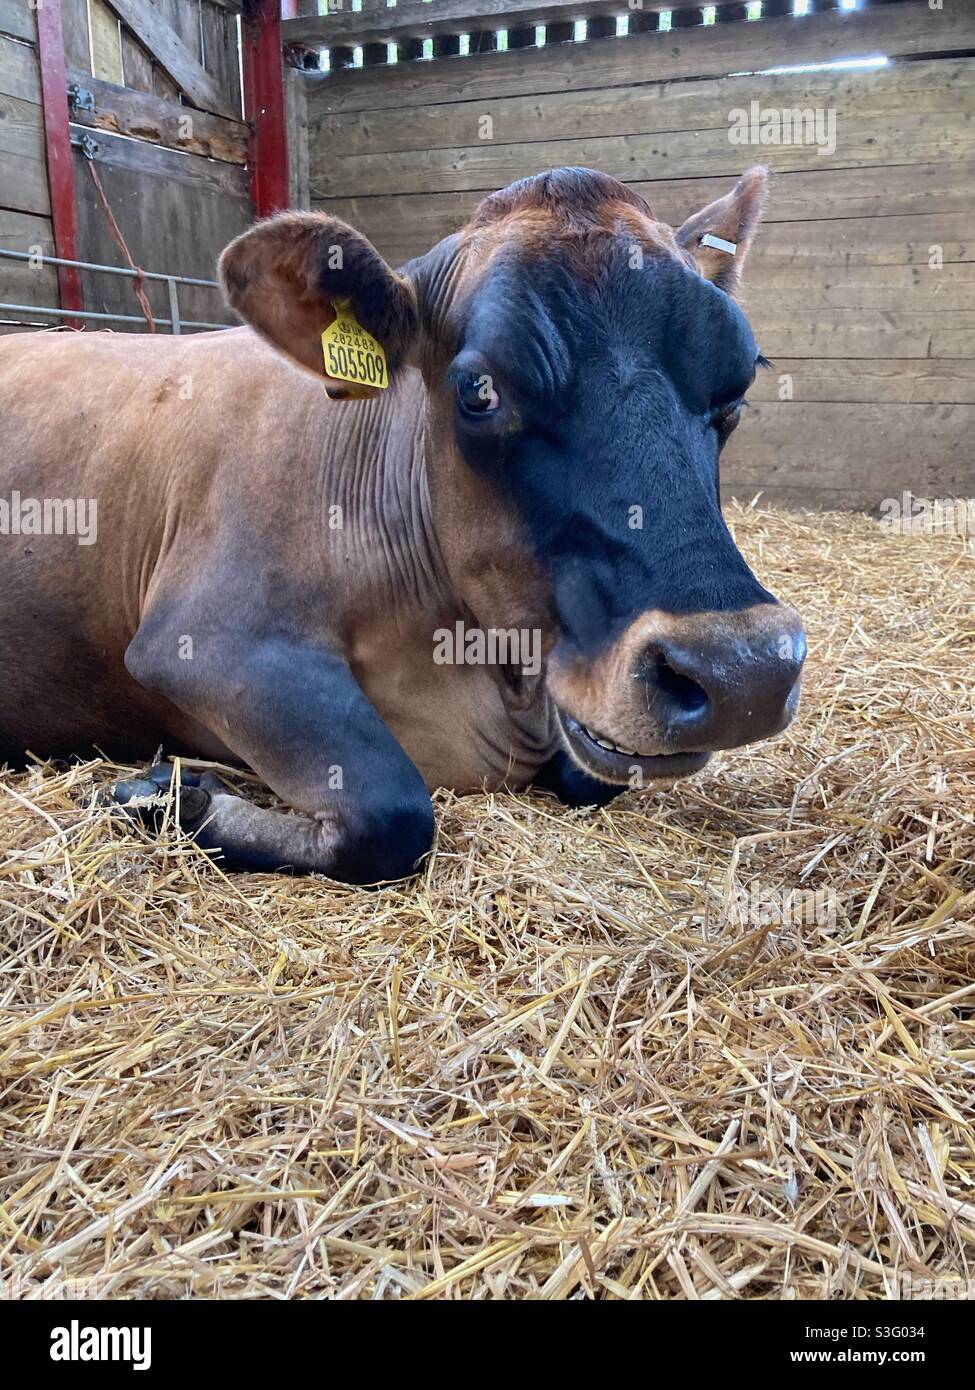 La mucca da latte all'interno di un fienile sorrideva sul fieno, la mucca sorridente, la mucca da latte, l'allevamento, la fattoria, il sorriso della mucca Foto Stock